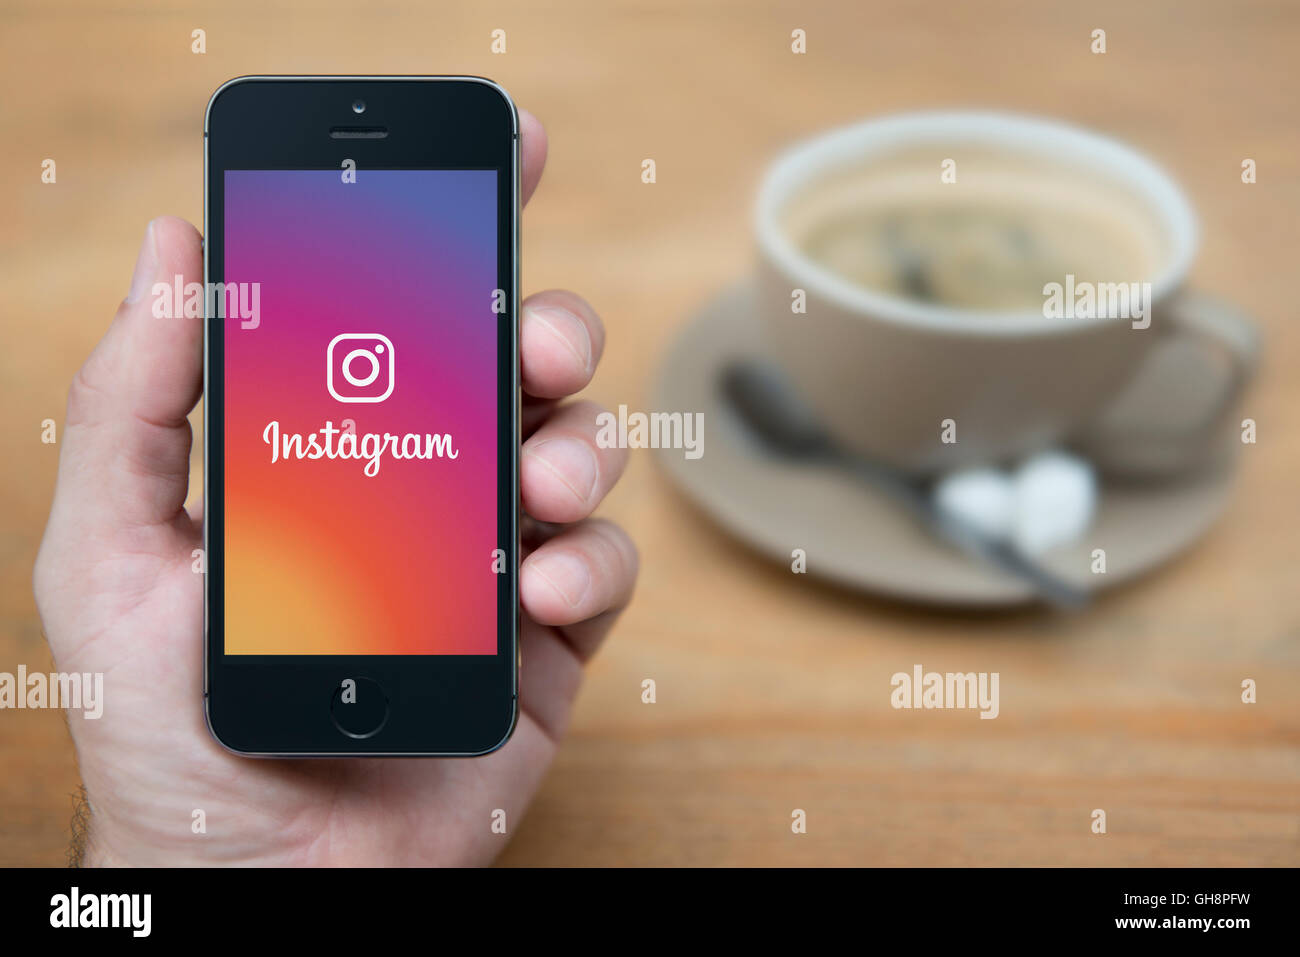 Un uomo guarda al suo iPhone che visualizza il logo Instagram, mentre sat con una tazza di caffè (solo uso editoriale). Foto Stock